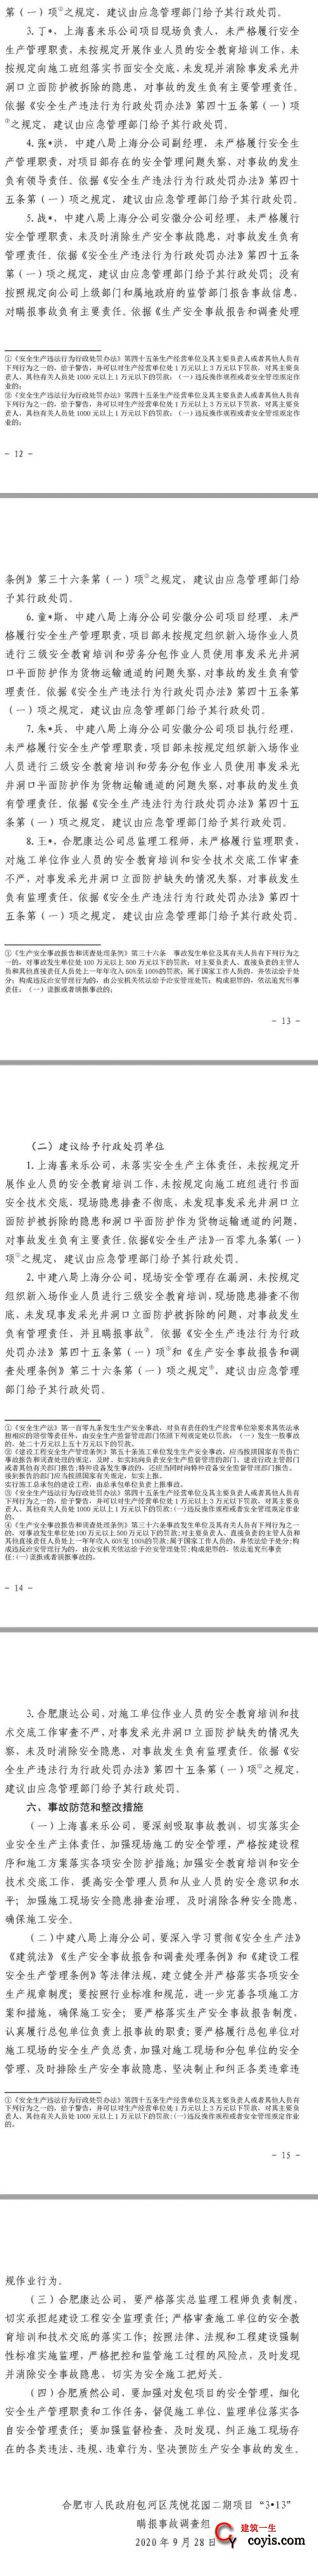 1人死亡、2人受伤，中建八局上海分公司竟然瞒报合肥施工项目事故